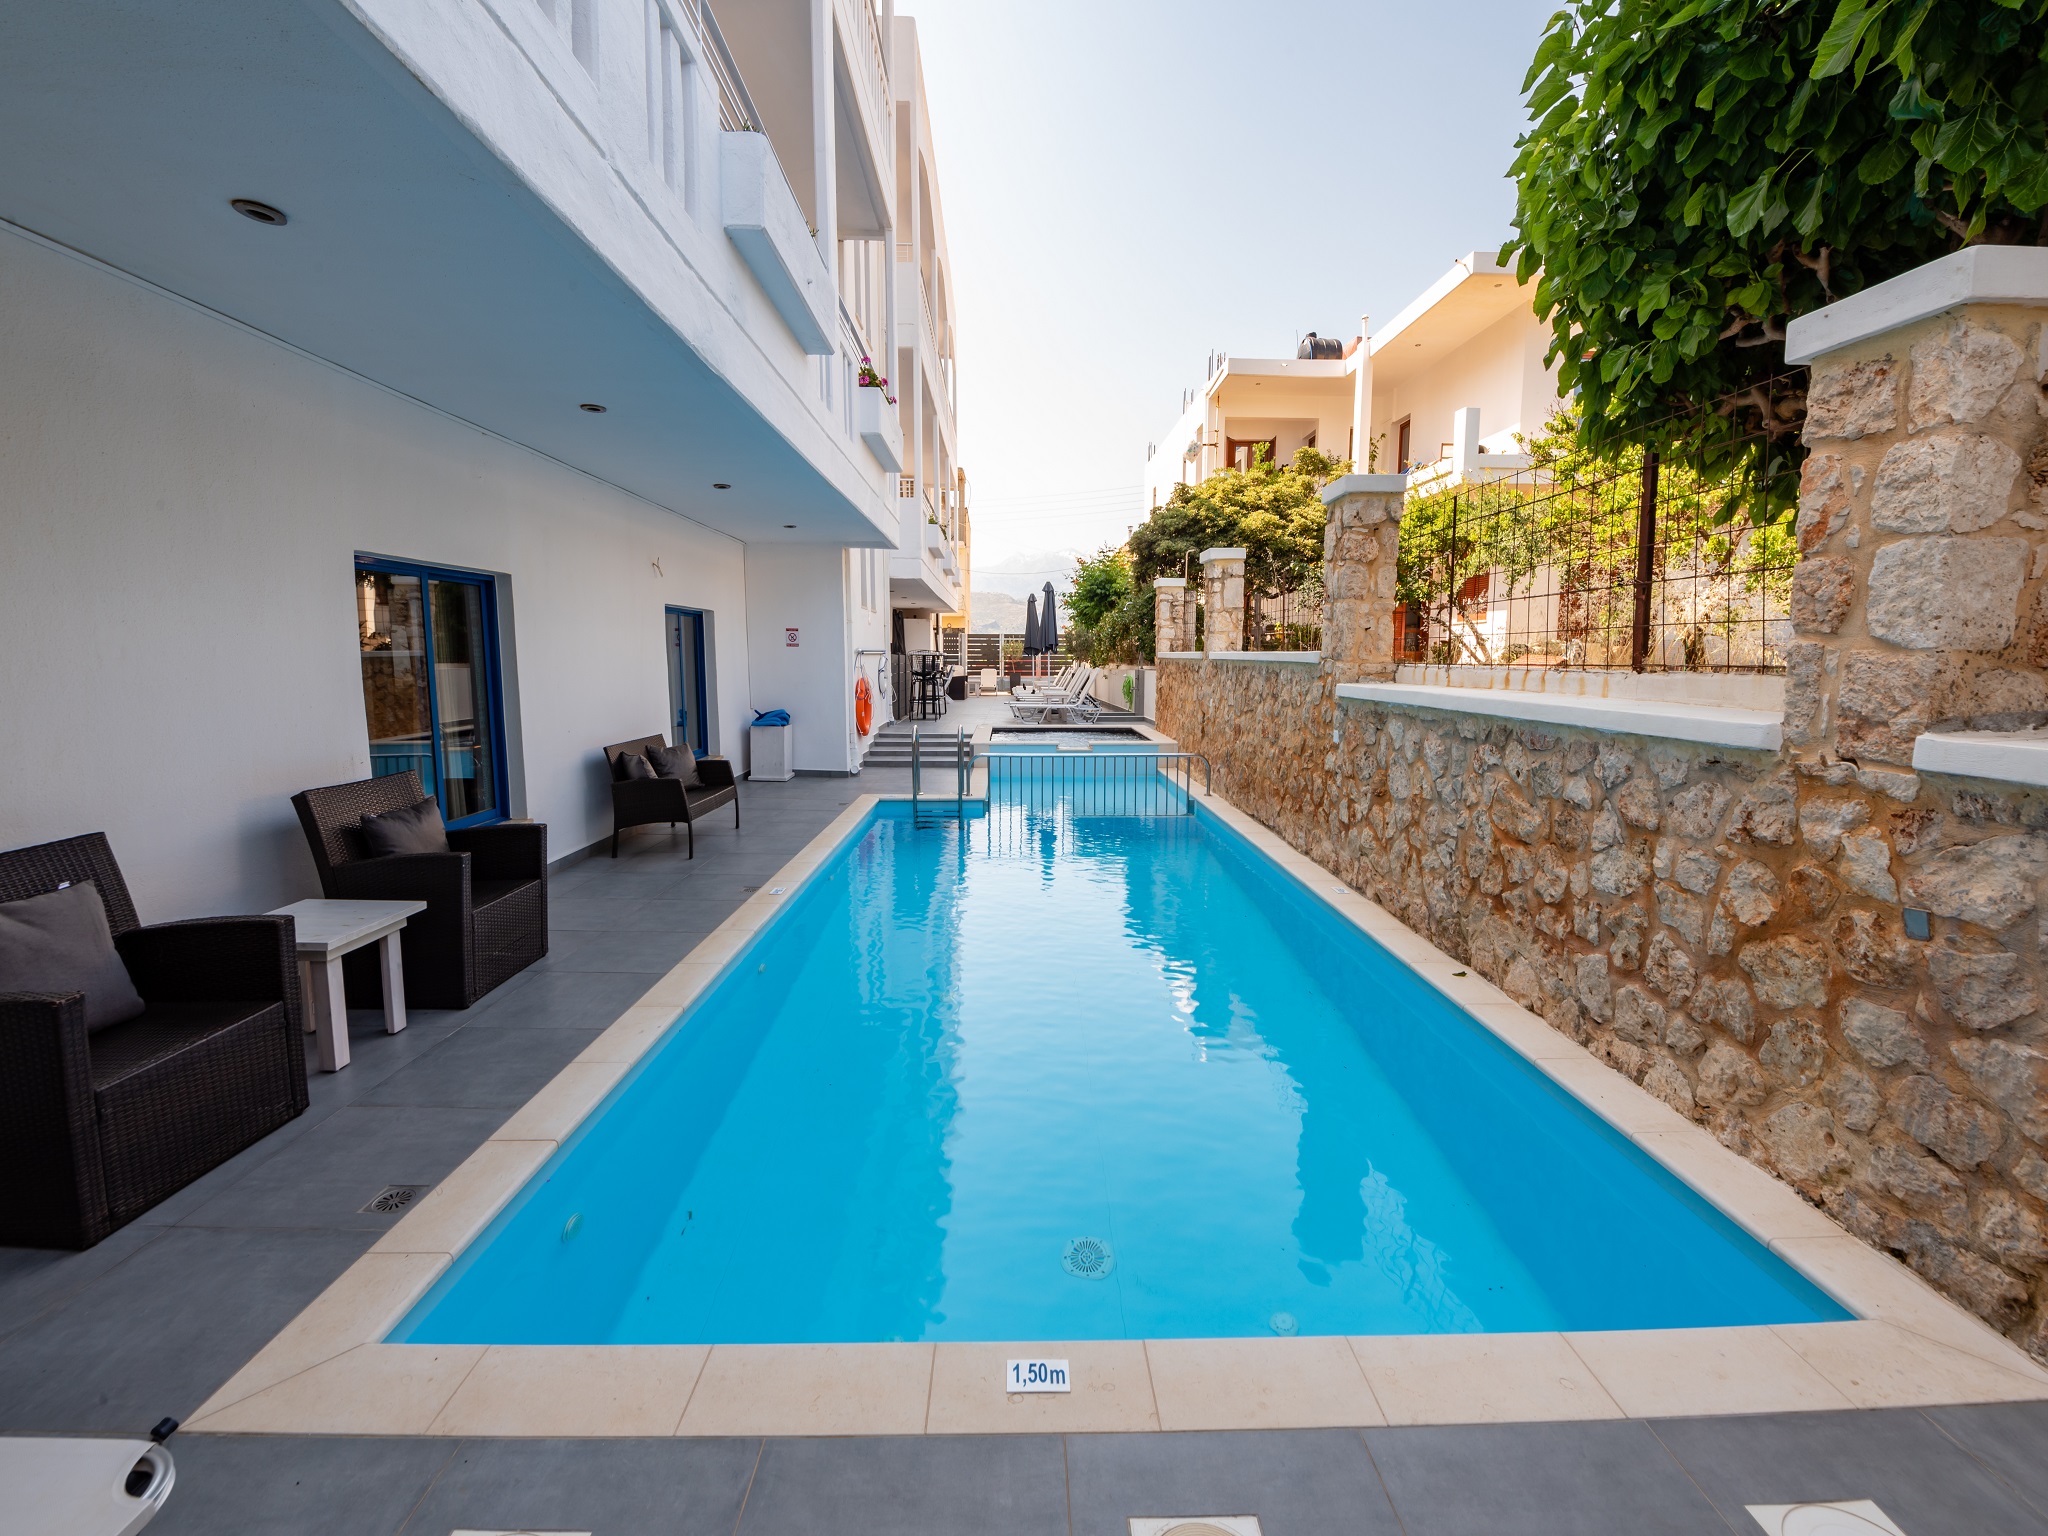 Alexis Hotel - Χανιά, Κρήτη ✦ 4 Ημέρες (3 Διανυκτερεύσεις) ✦ 2 άτομα ✦ 1 ✦ 01/08/2022 έως 31/08/2022 ✦ Υπέροχη Τοποθεσία!